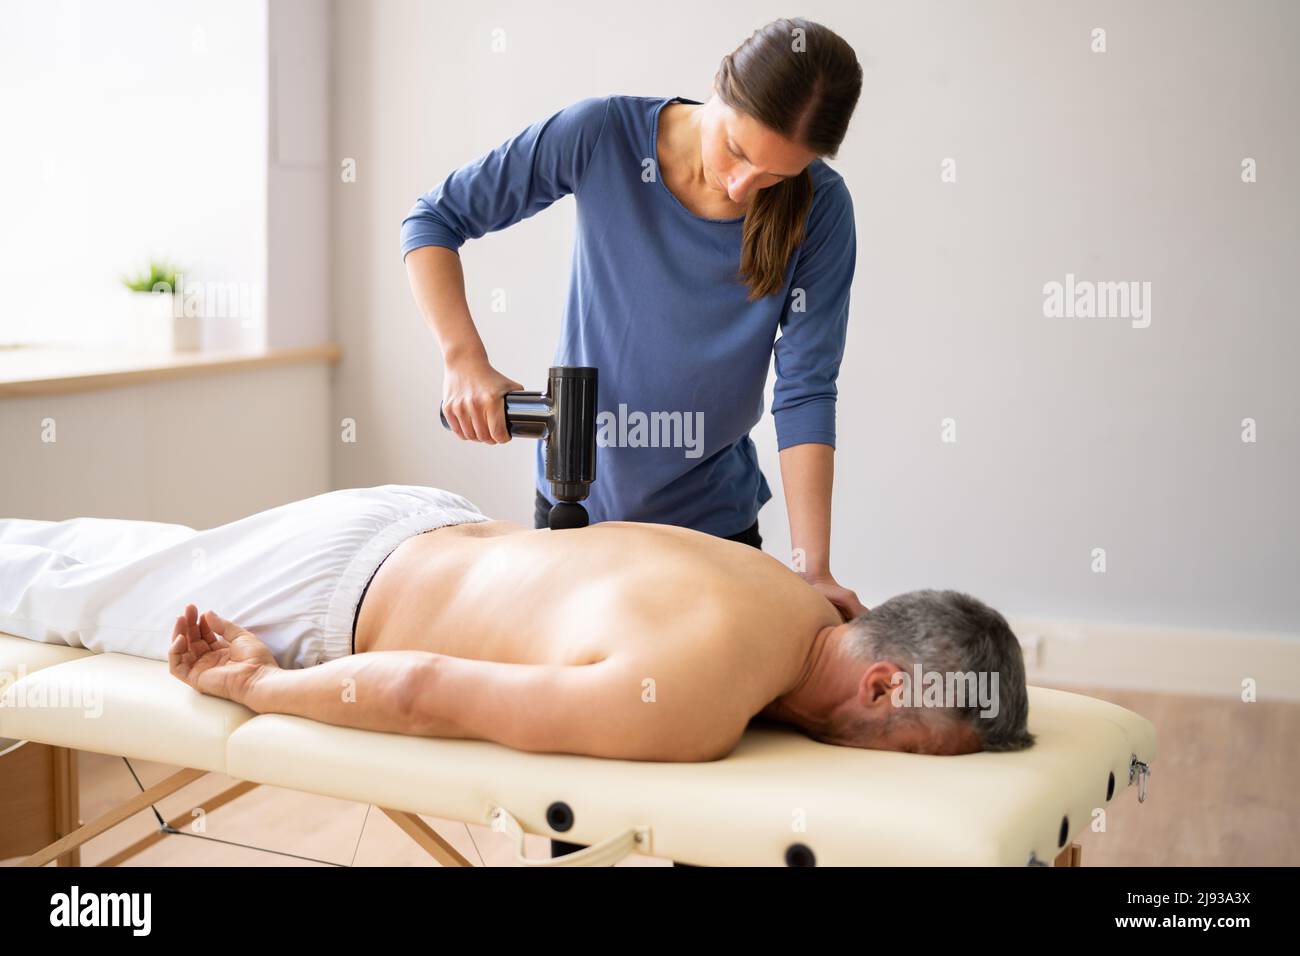 https://c8.alamy.com/compes/2j93a3x/maquina-de-pistola-de-masaje-para-terapia-de-recuperacion-muscular-2j93a3x.jpg